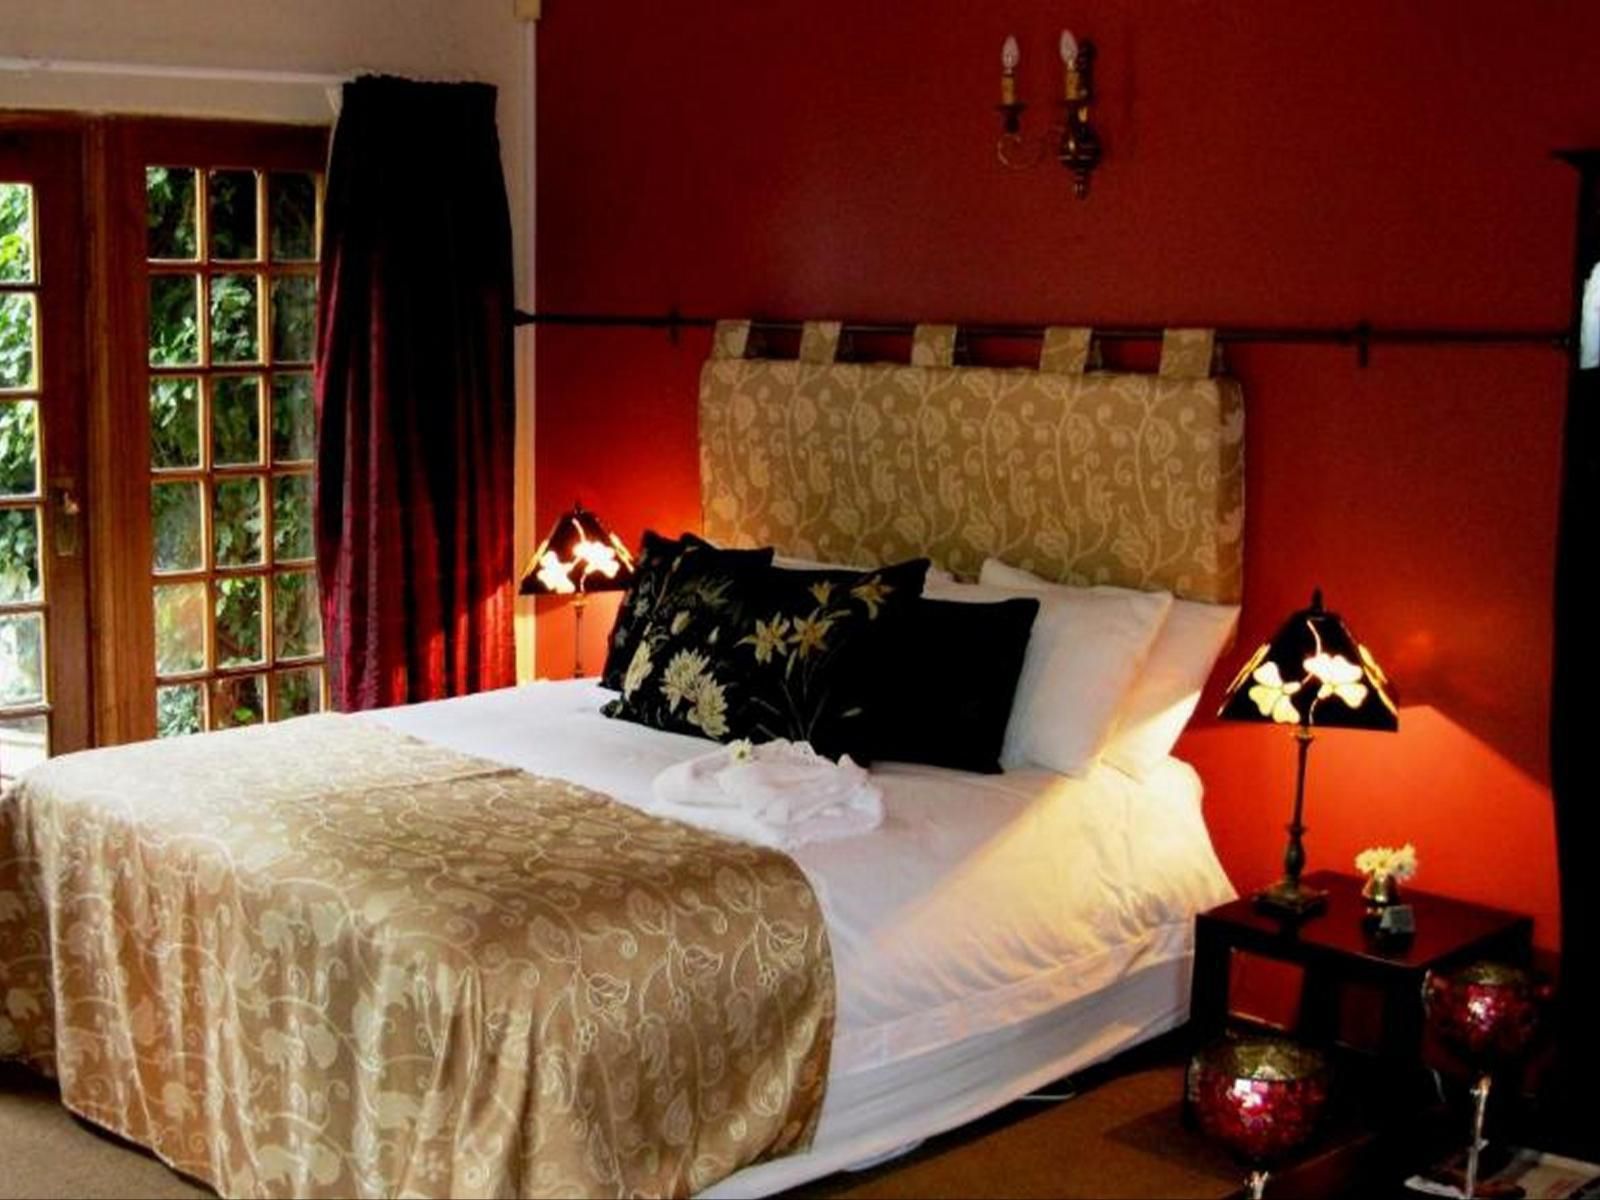 Village Green Guest House Parkview Johannesburg Gauteng South Africa Bedroom